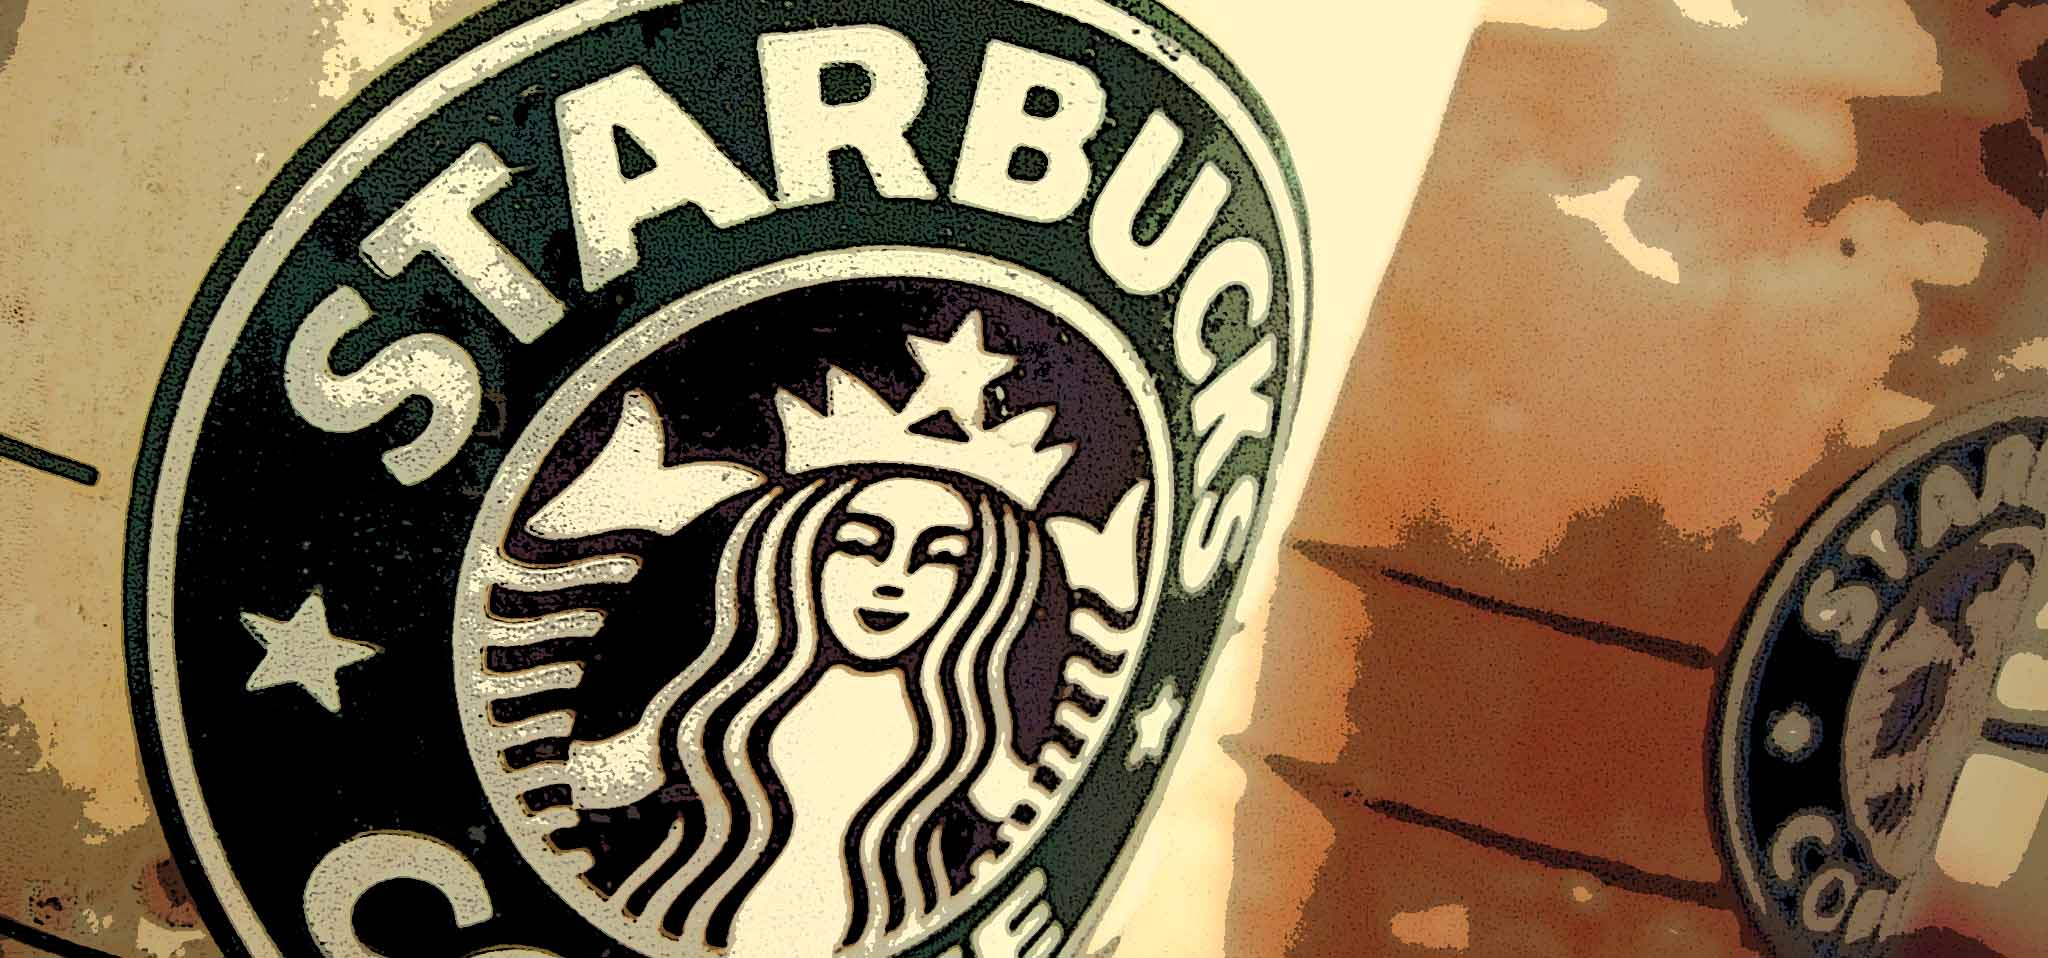 Starbux y la rebelión de los baristas